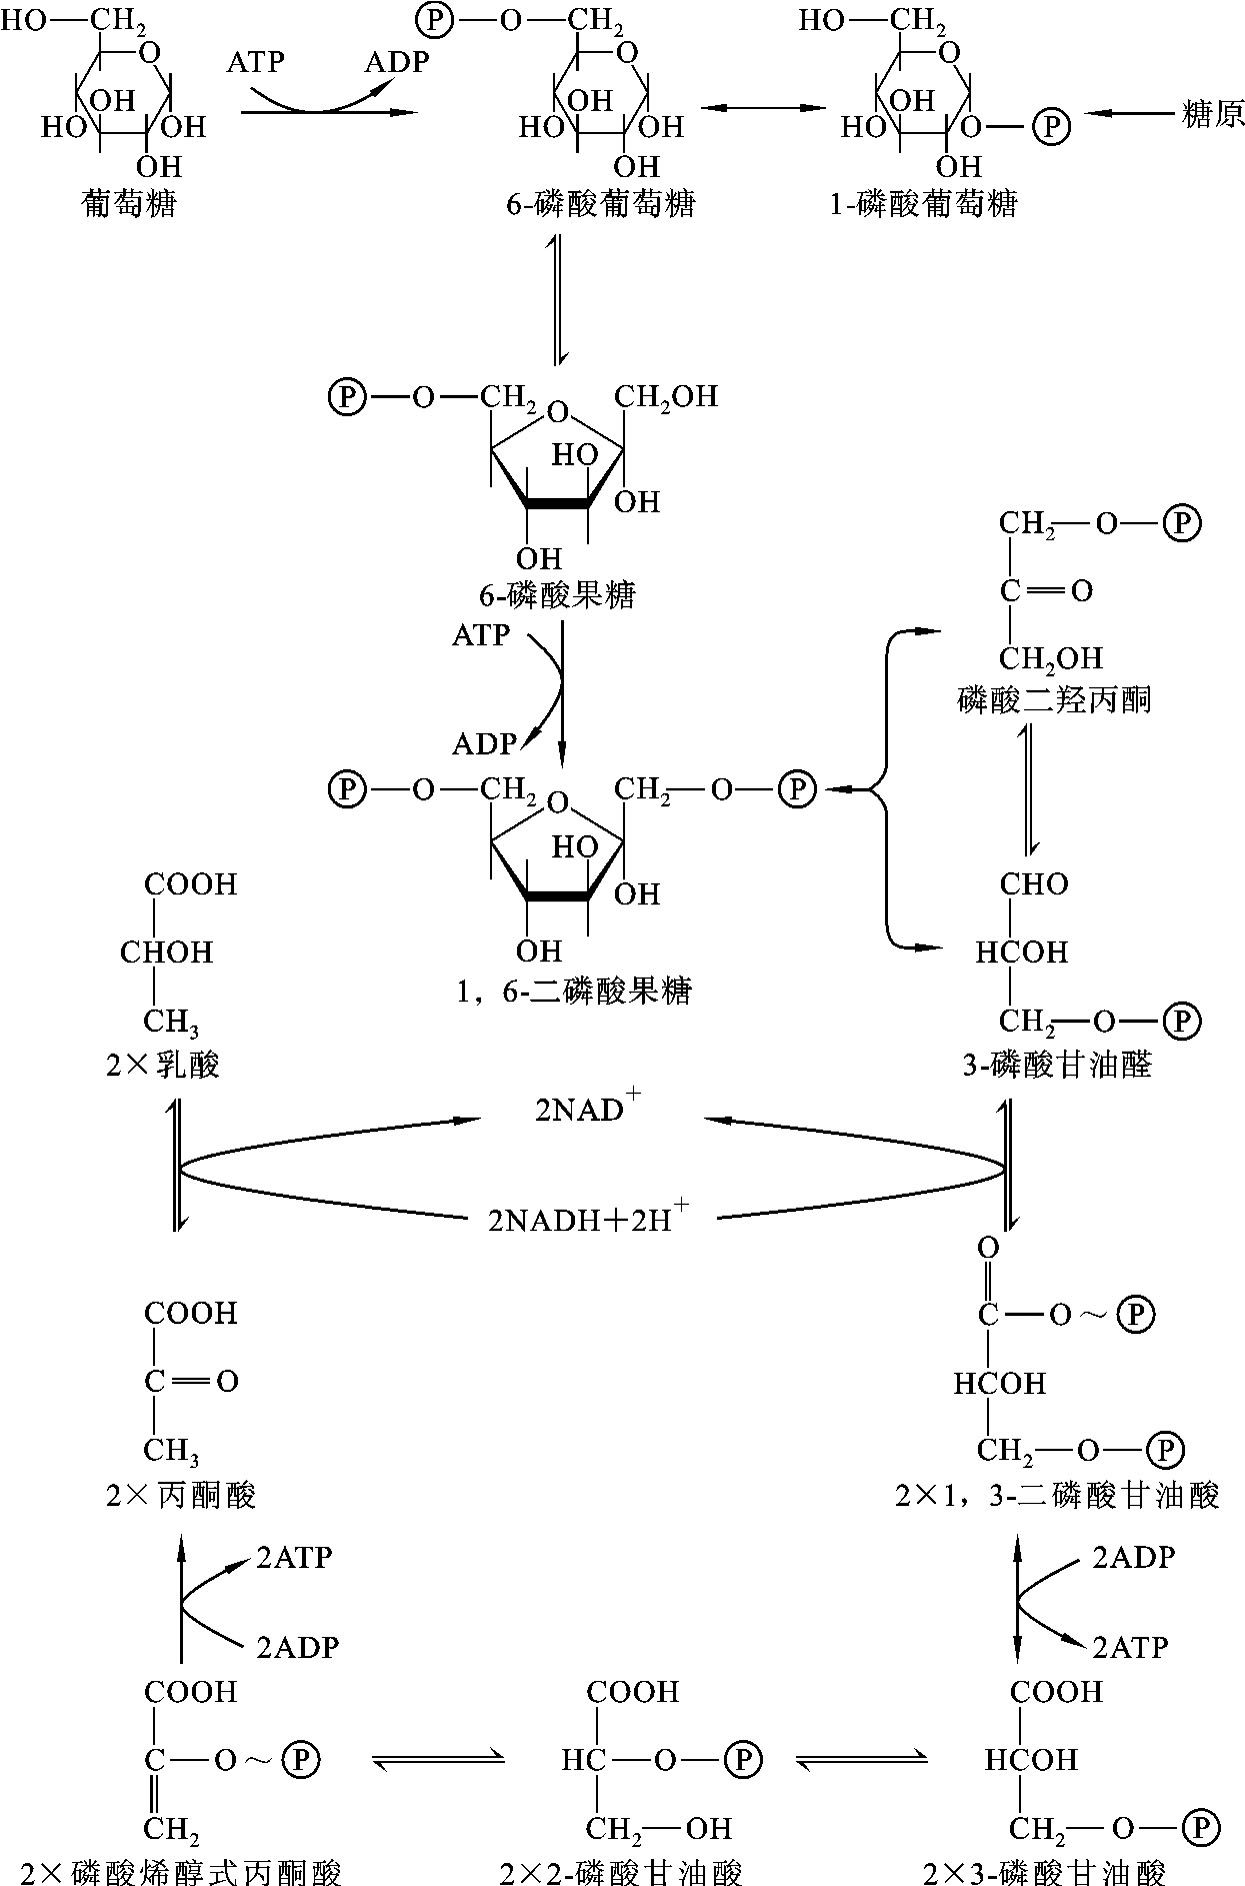 糖酵解十步反应流程图图片